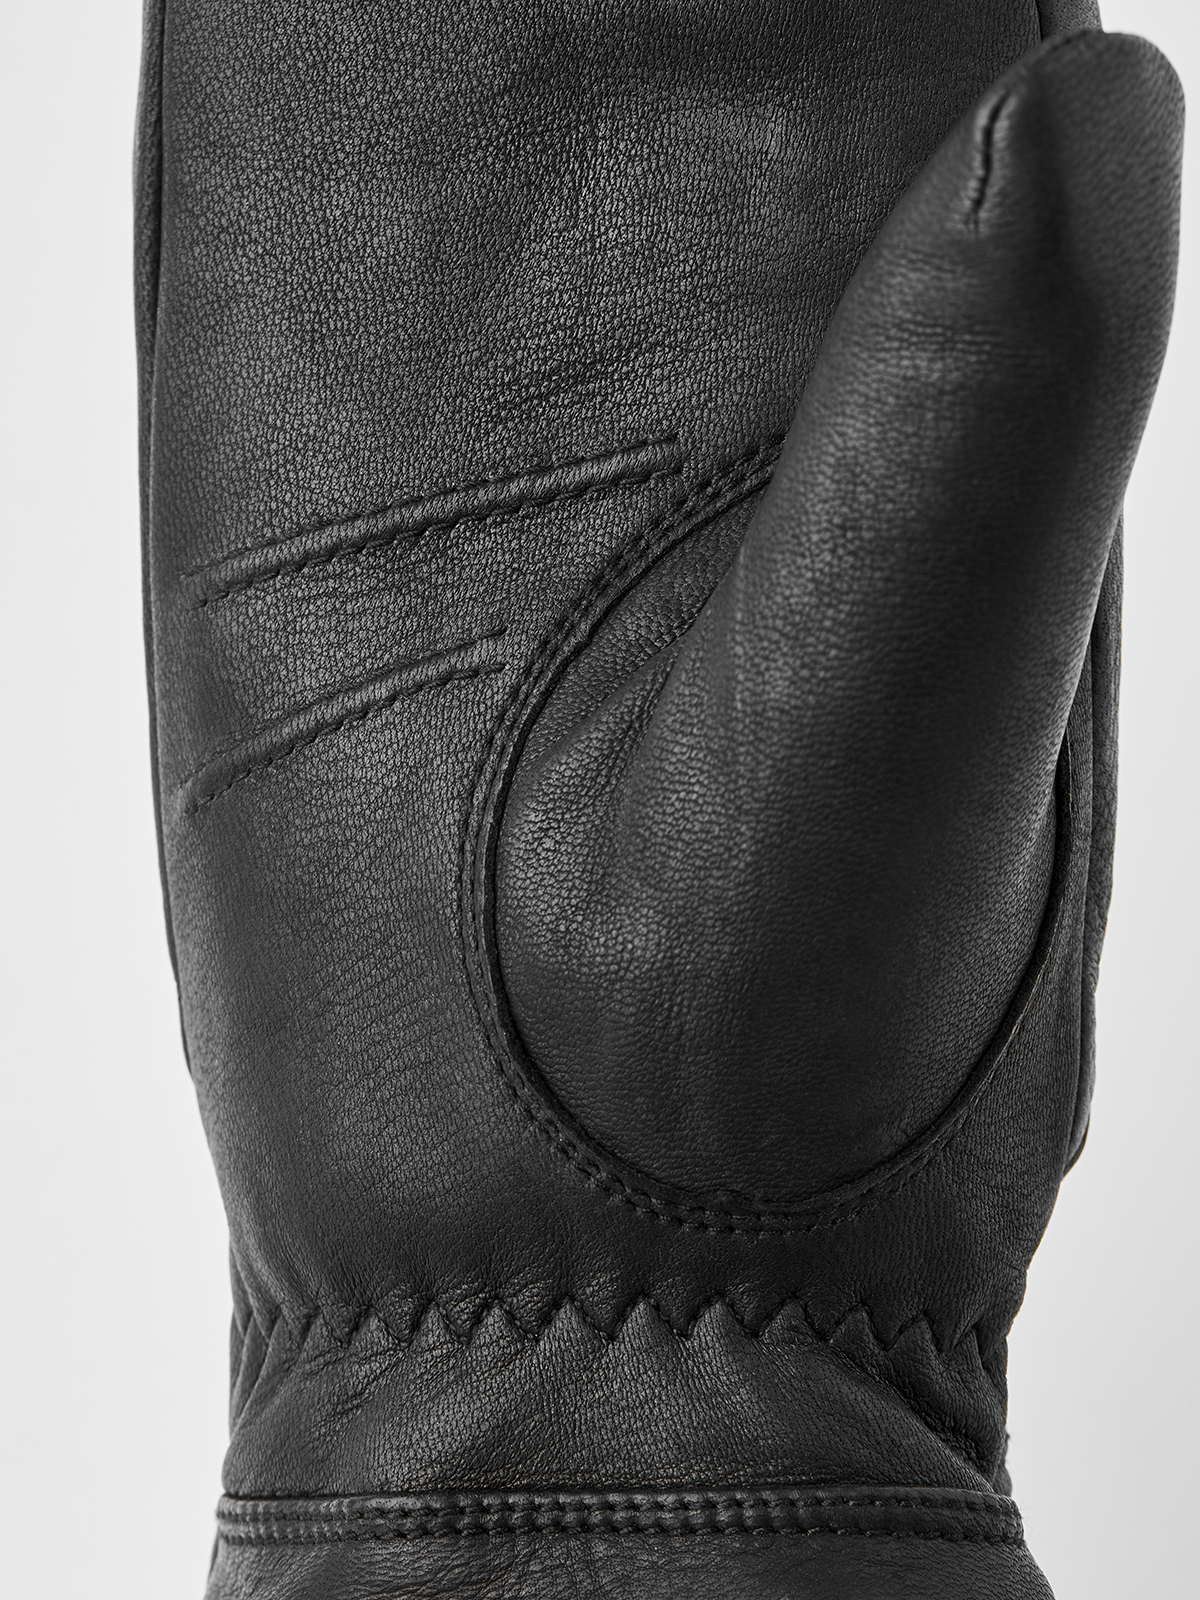 Sundborn Black Hestra Gloves